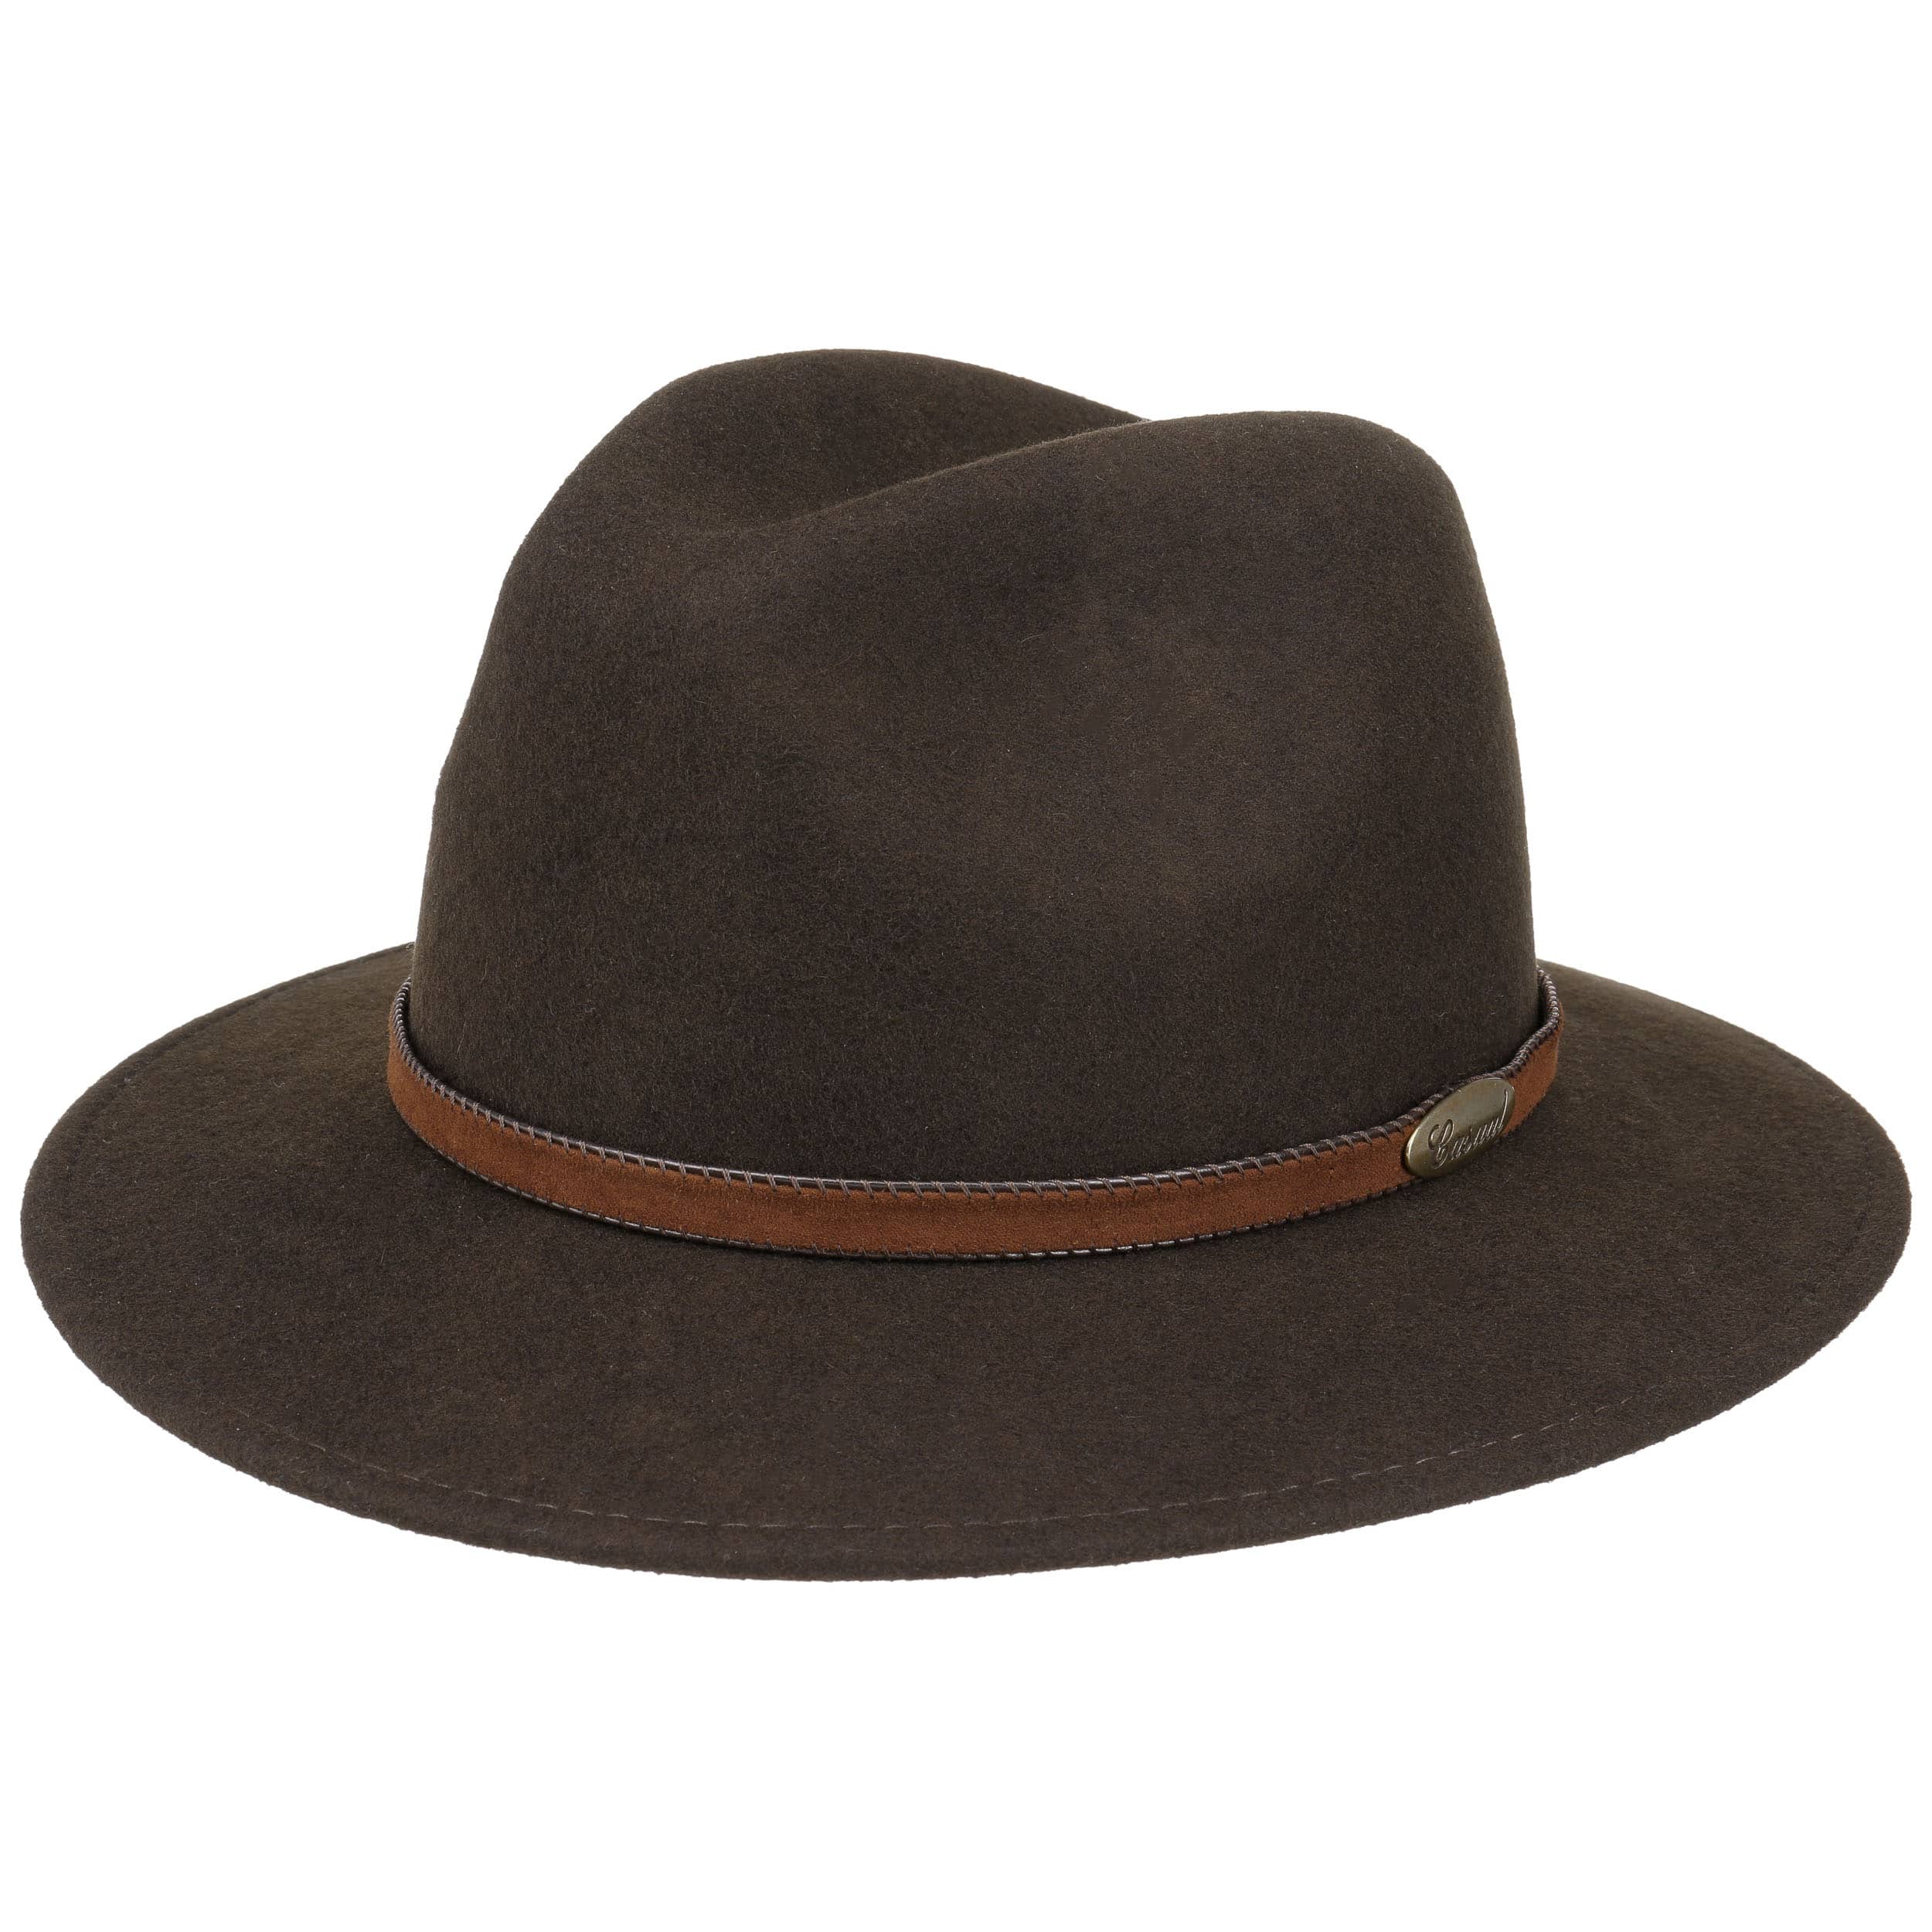 Accessories Hats Felt Hats LL Felt Hat brown casual look 